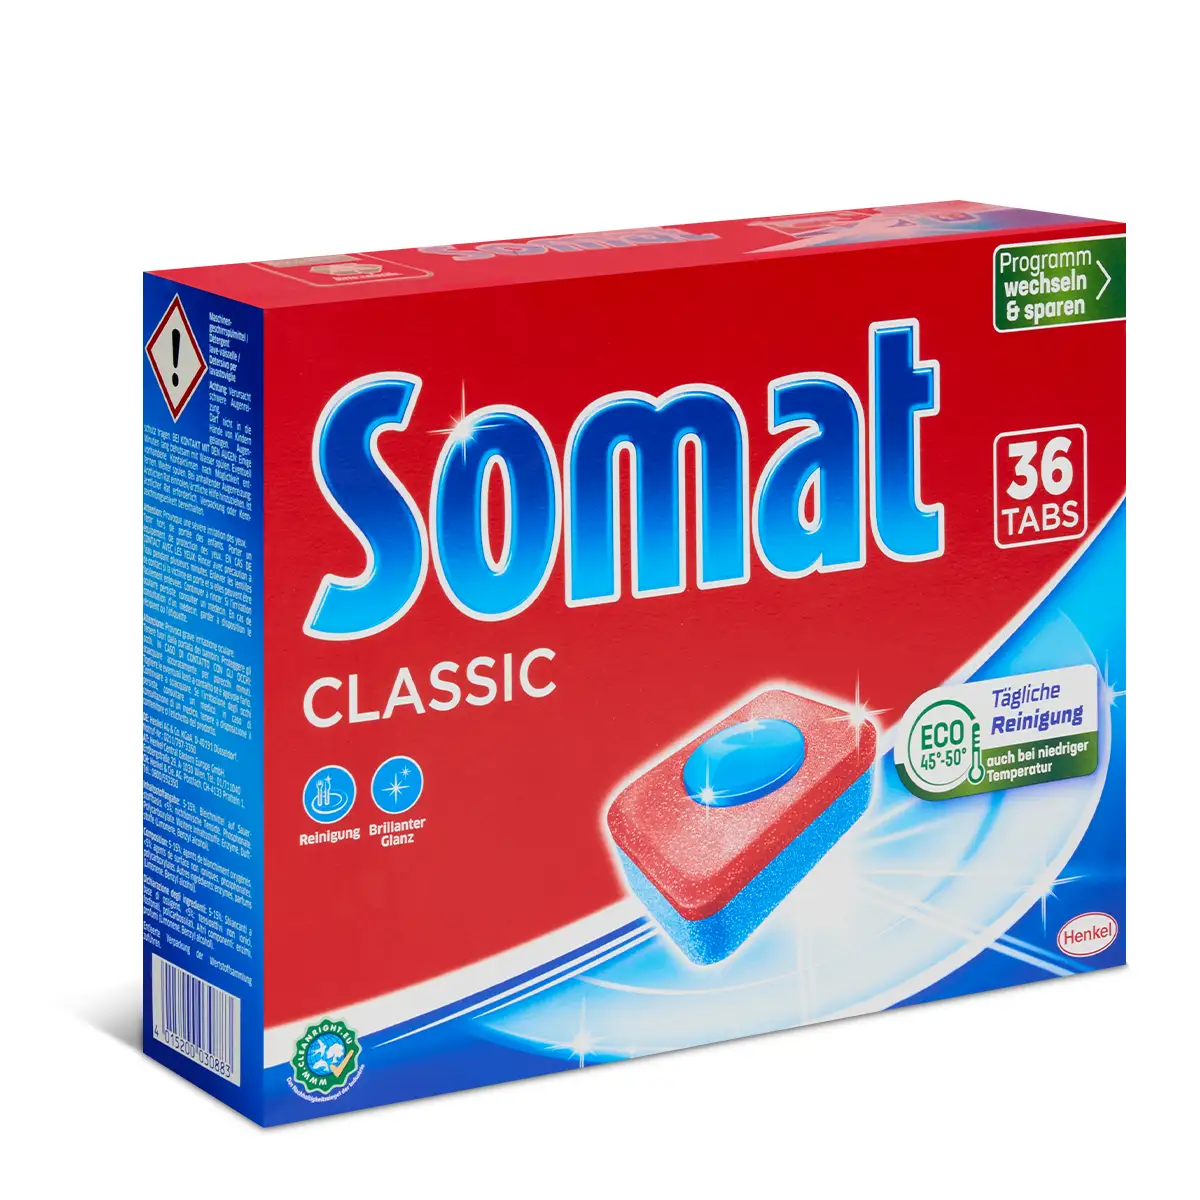 Somat Classic Tabs 36er